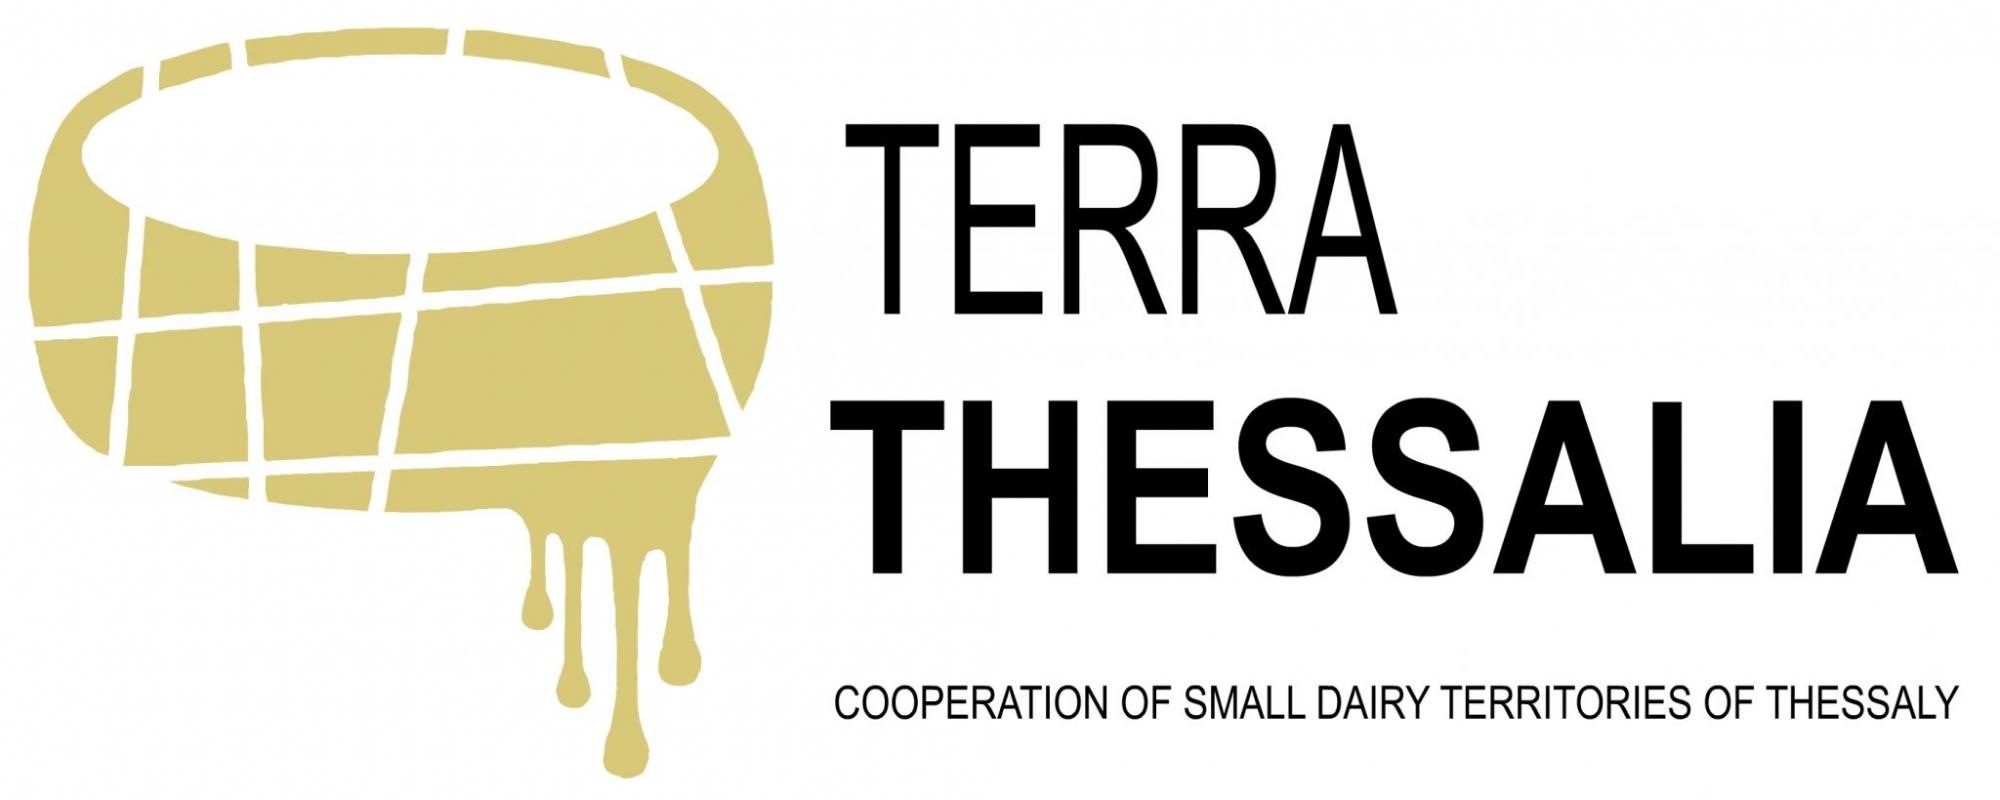 18 TerraThessalia logo